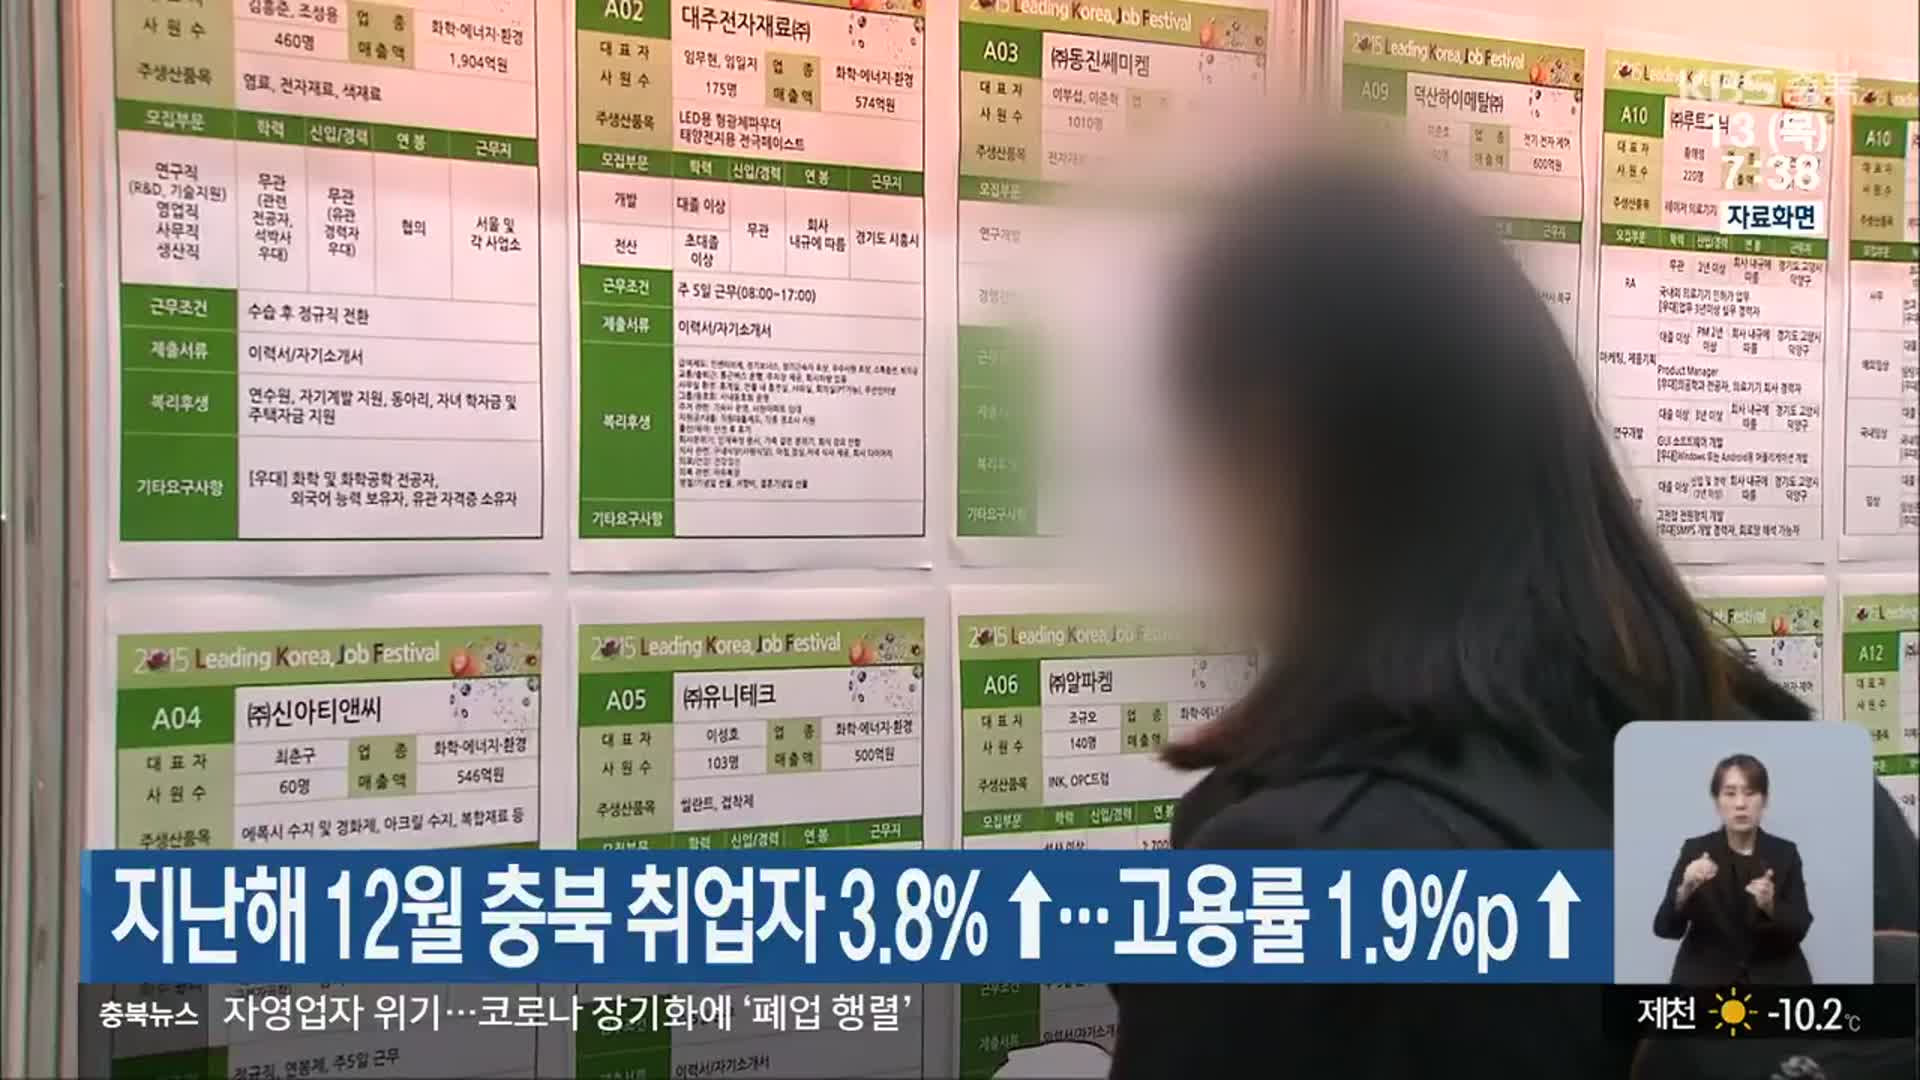 지난해 12월 충북 취업자 3.8%↑…고용률 1.9%p↑